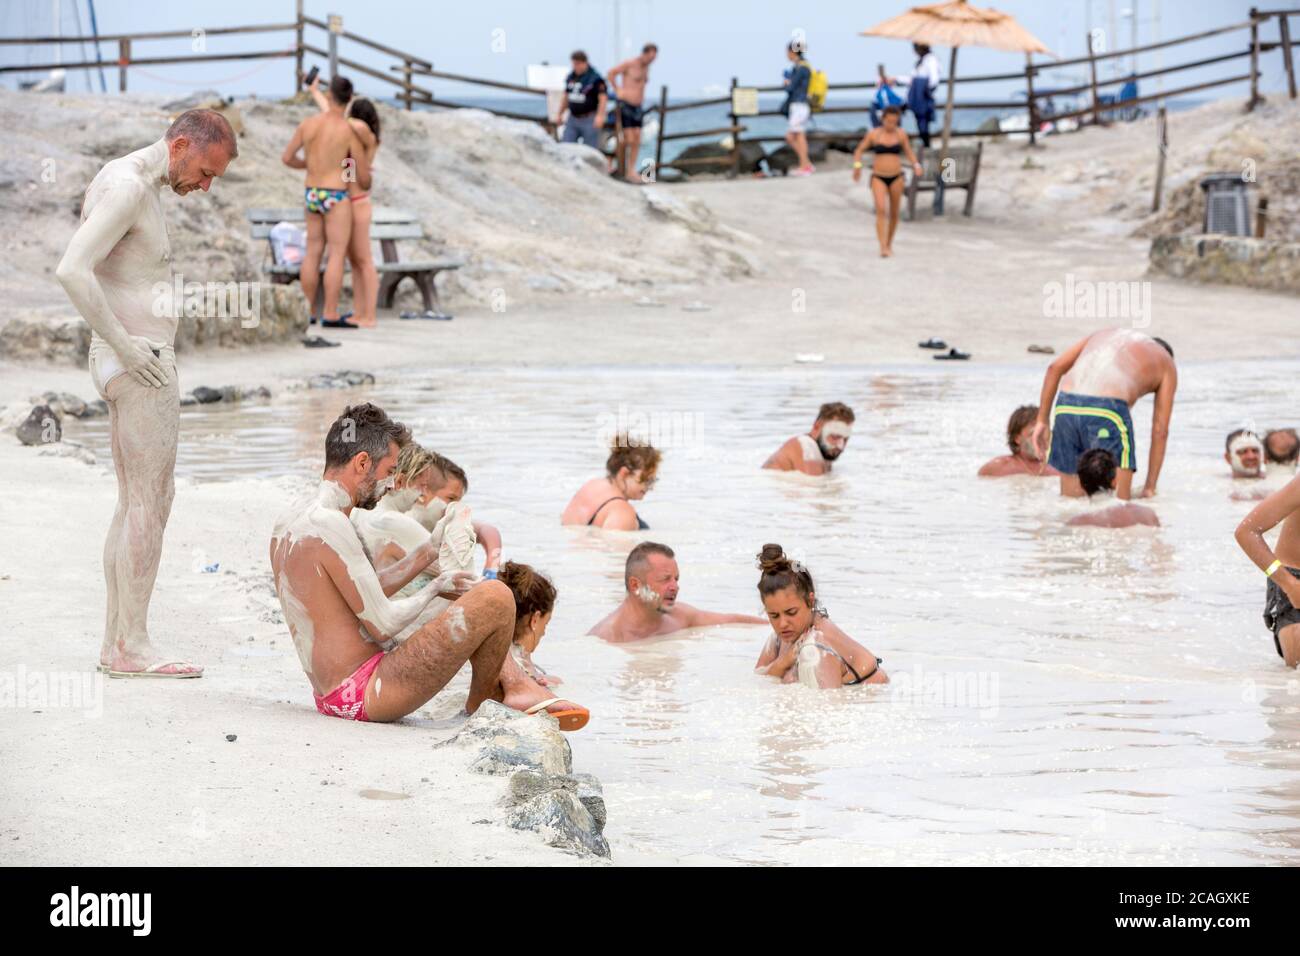 20.08.2018, Vulcano, Sicile, Italie - touristes et locaux prennent un bain de soufre, bain curatif dans la boue de soufre. En arrière-plan la mer. Vulcano b Banque D'Images